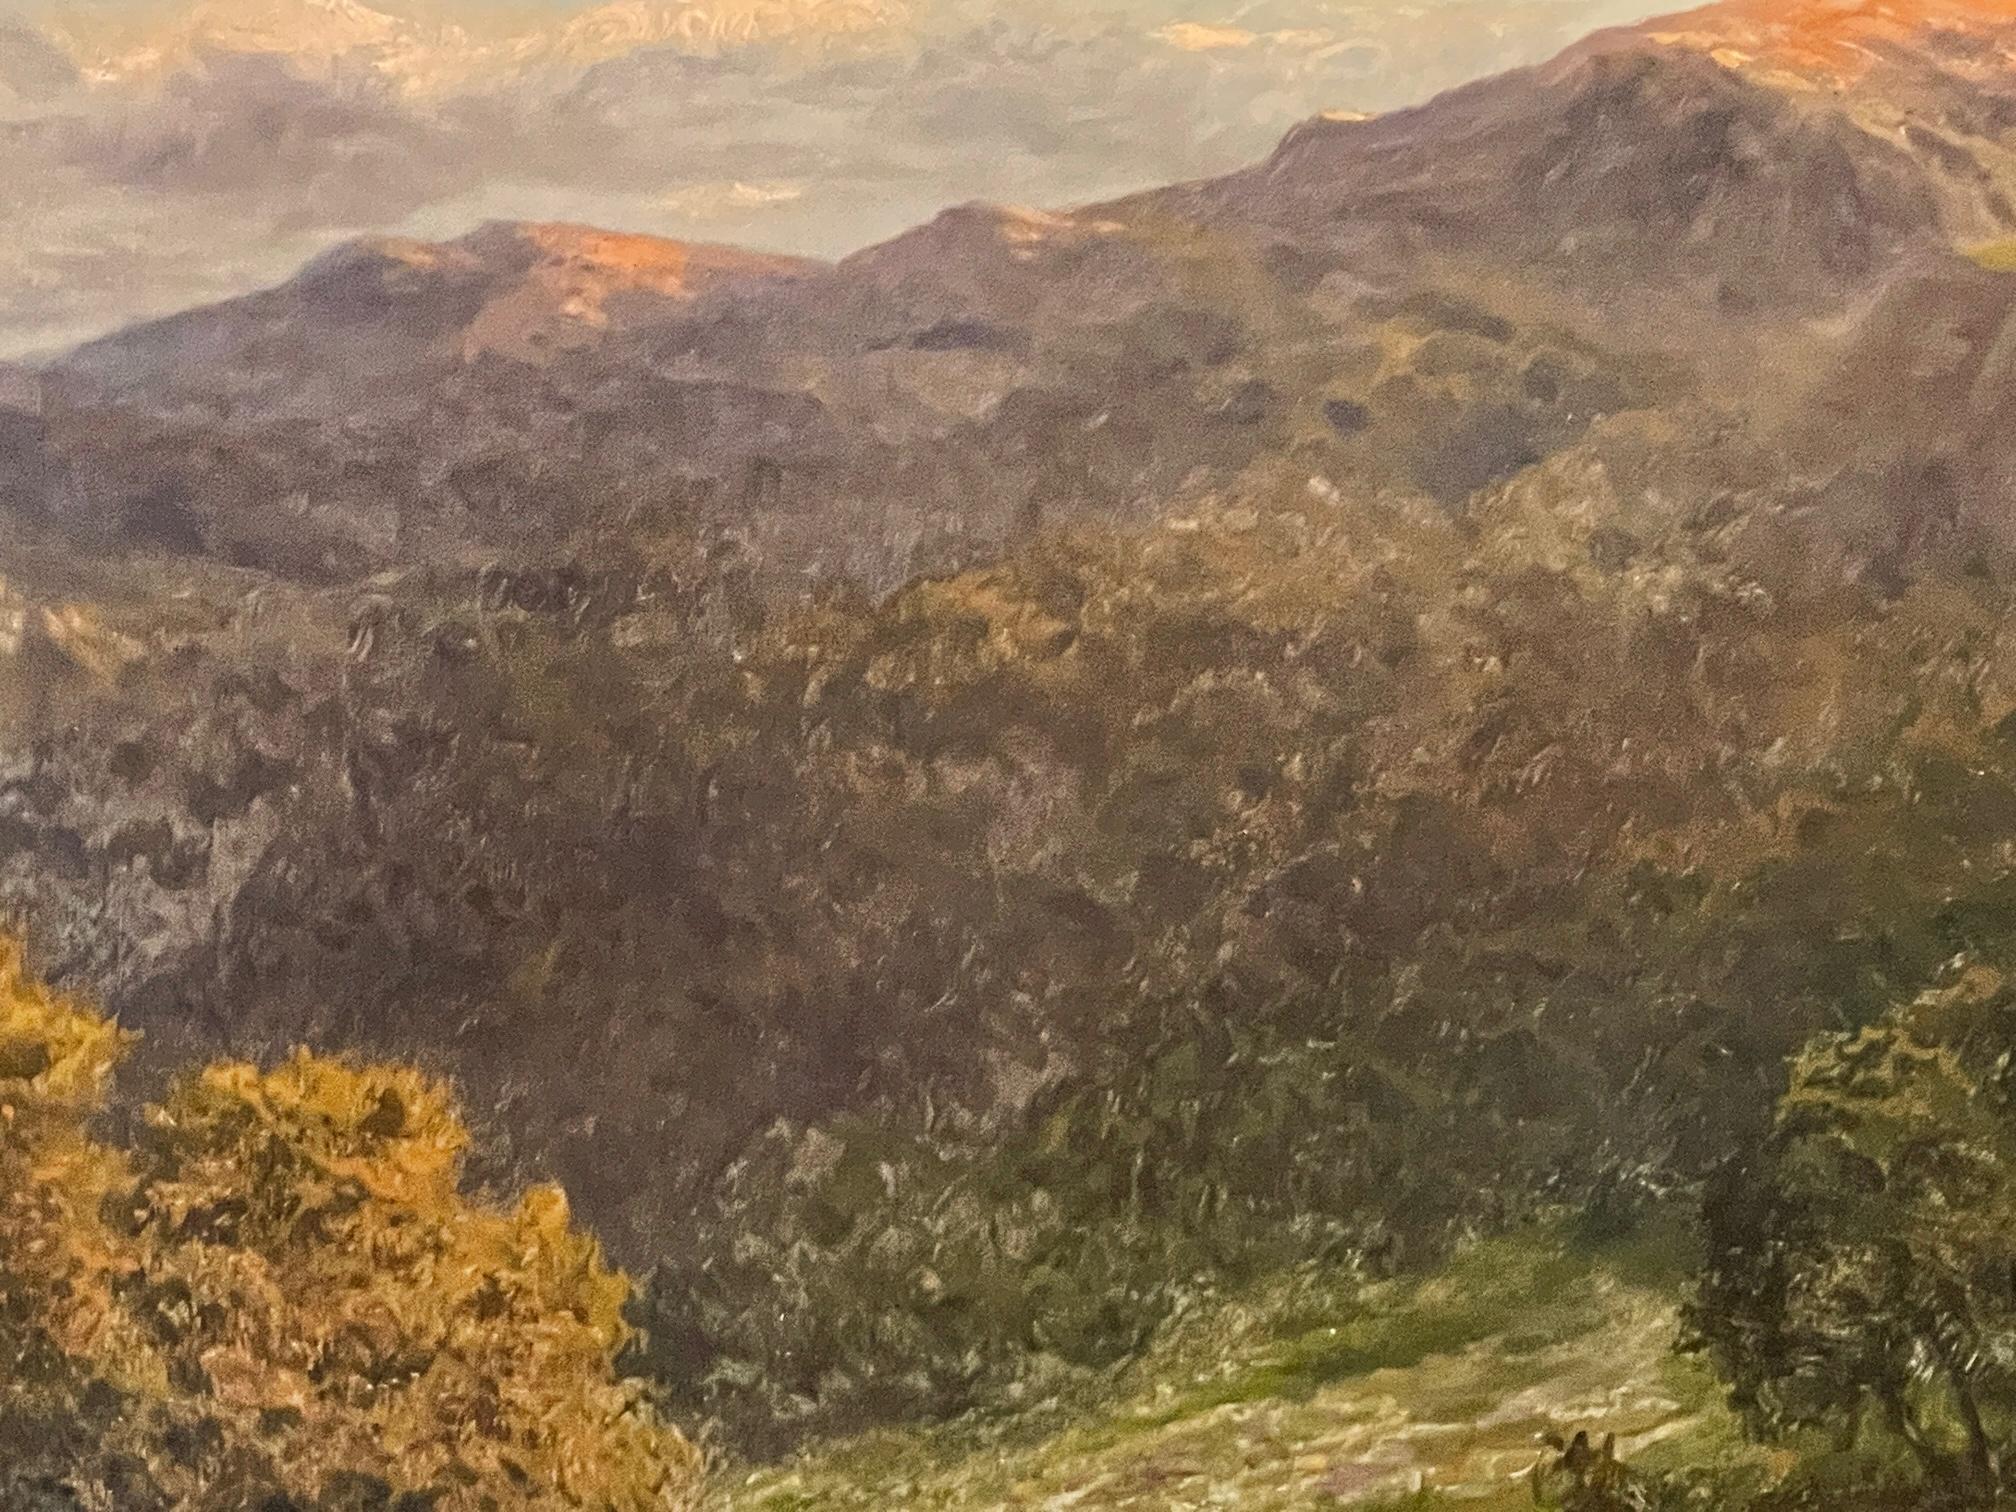  Paysage au coucher du soleil - Impressionnisme Painting par Daniel Sherrin